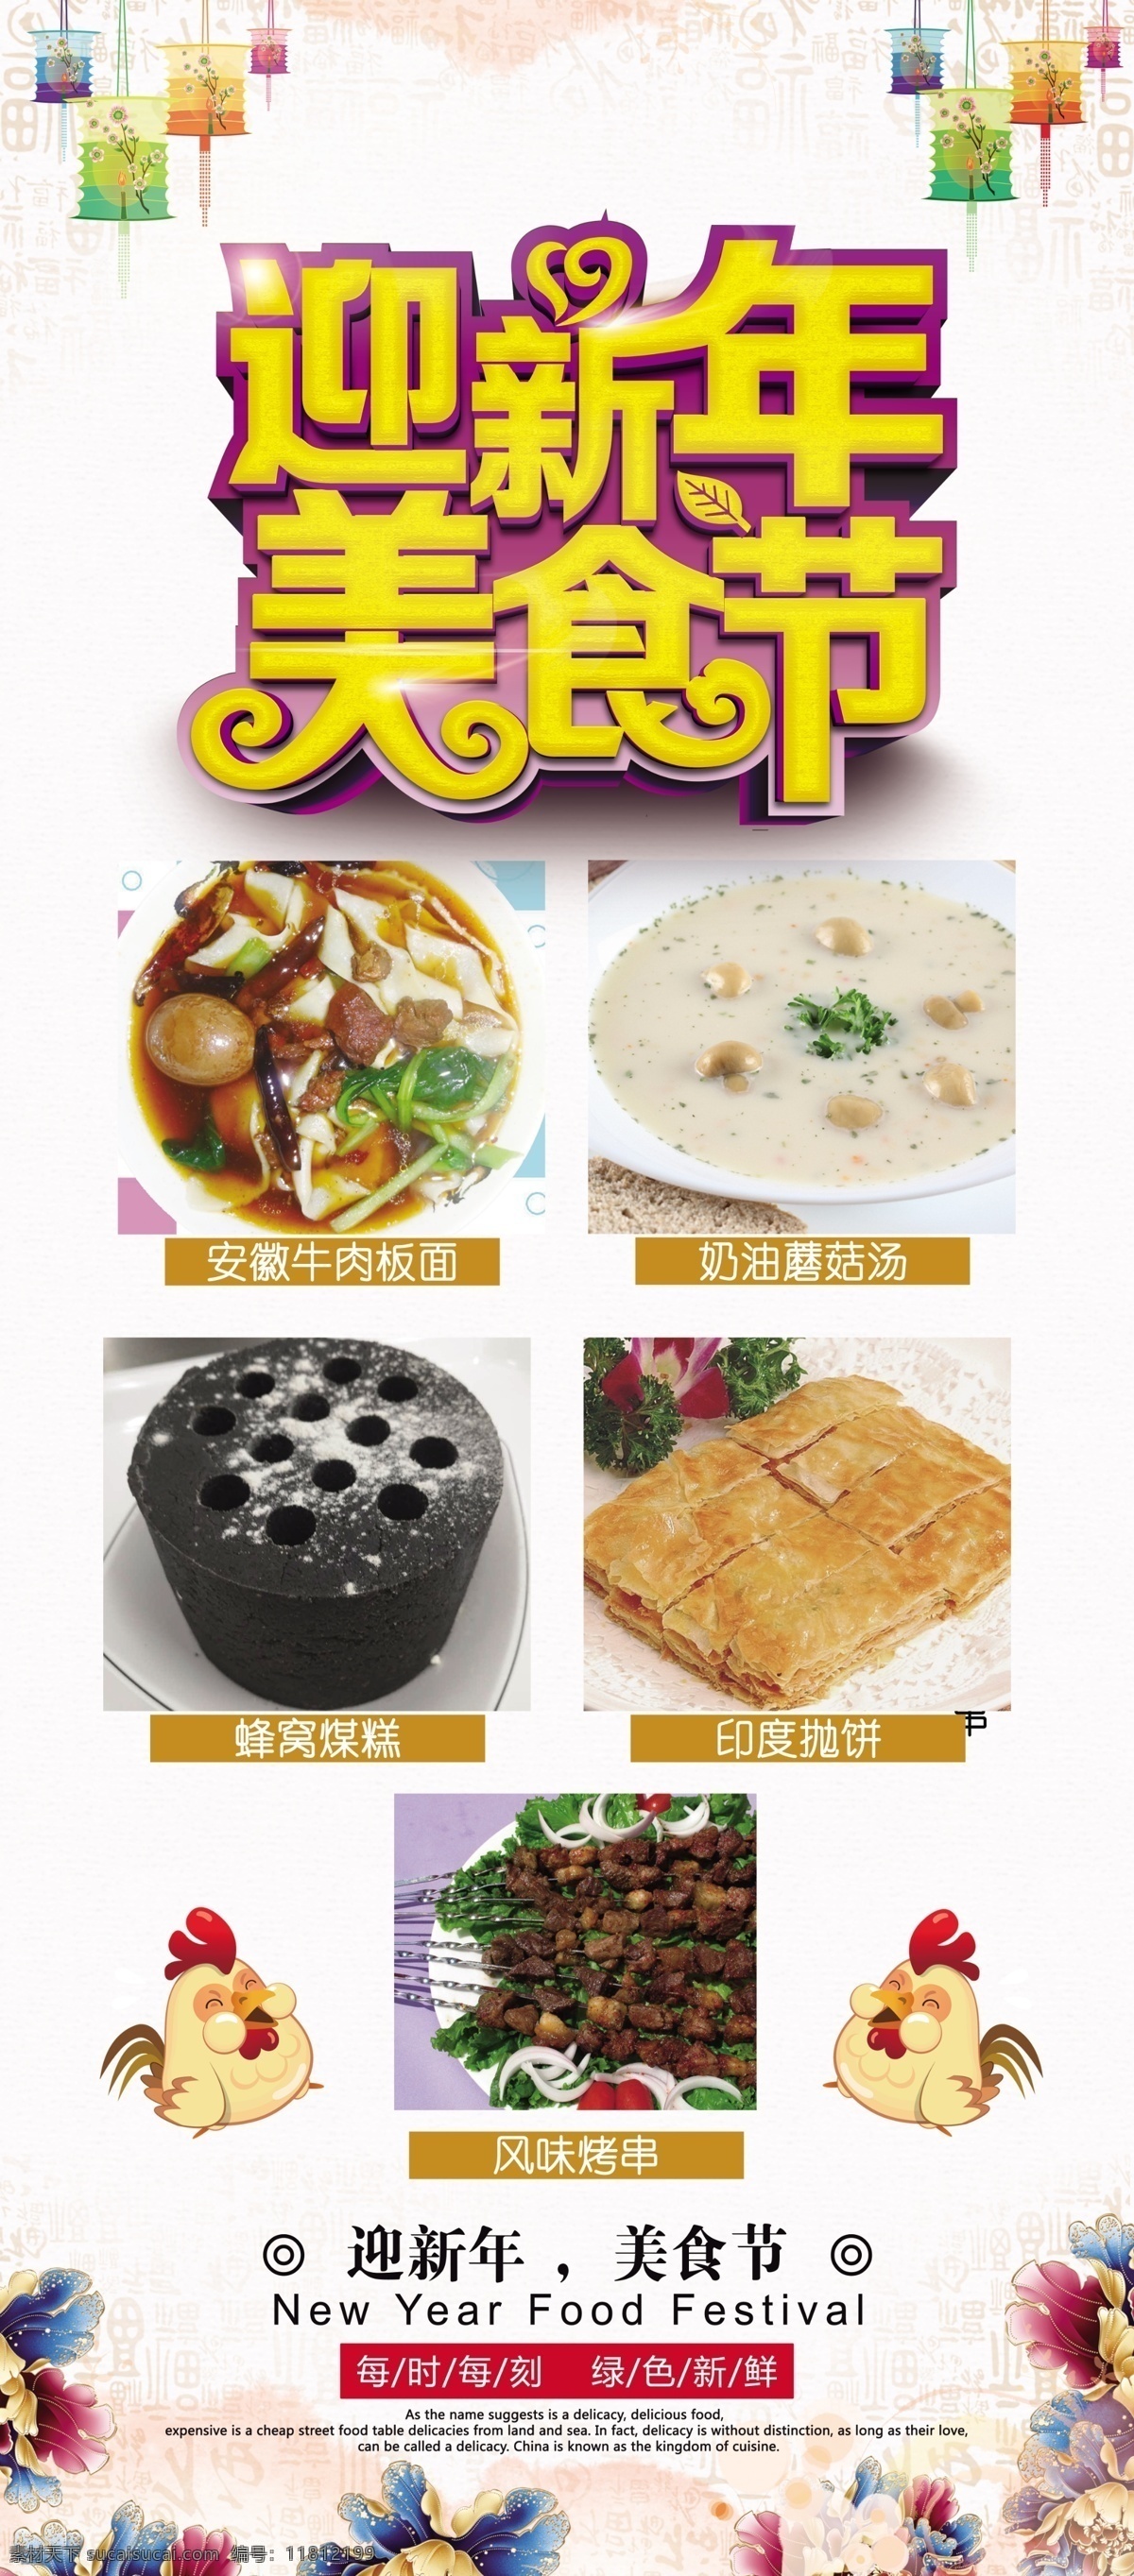 迎新 年 美食节 食物 海报 源文件 春节 蛋糕 灯笼 烧鸡 装饰图案